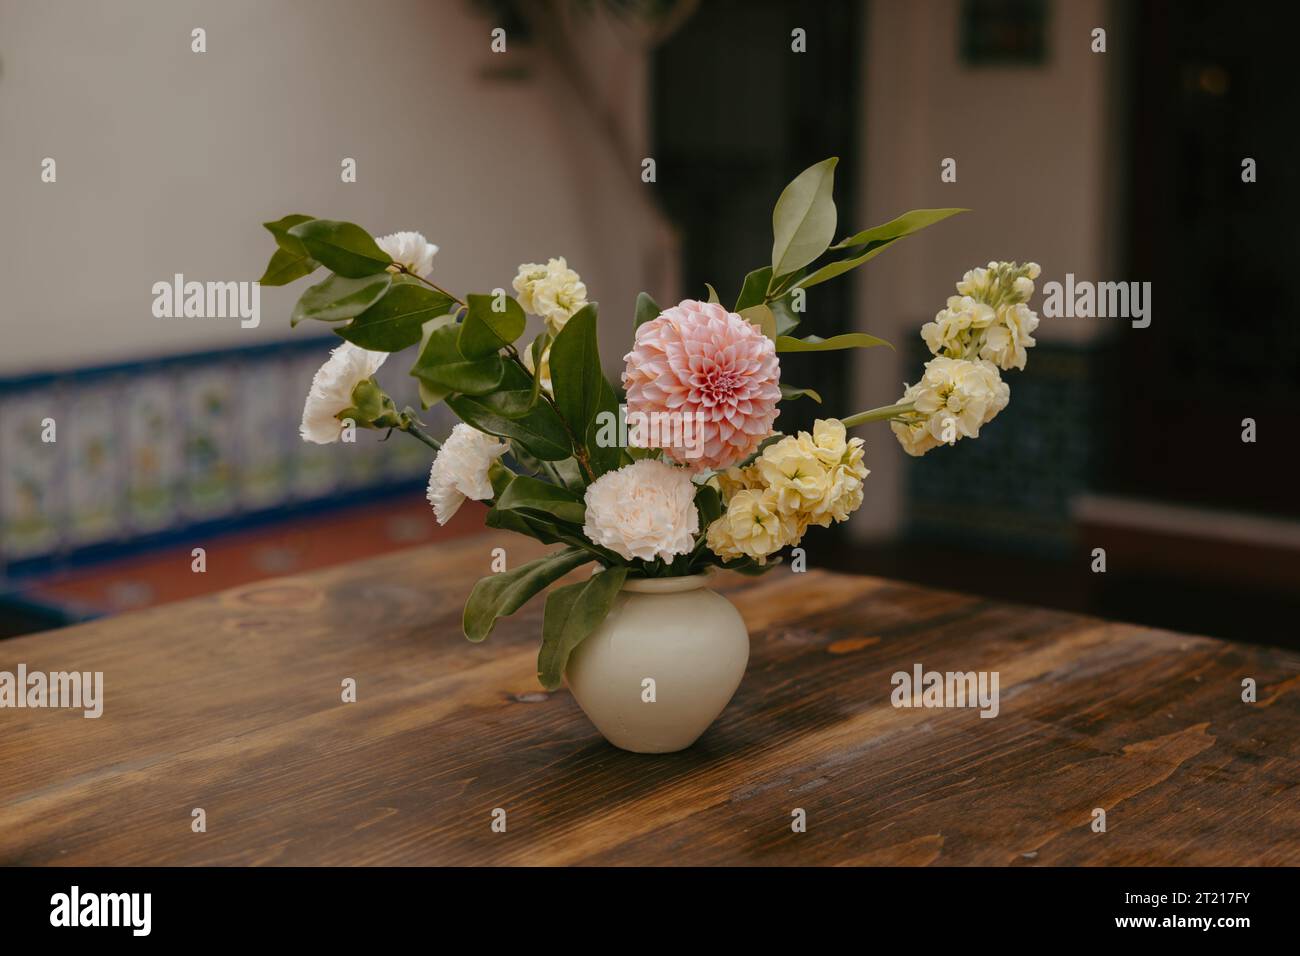 Une nature morte avec un vase en verre coloré avec un bouquet vibrant de fleurs assorties placé sur une table en bois devant un mur carrelé texturé Banque D'Images